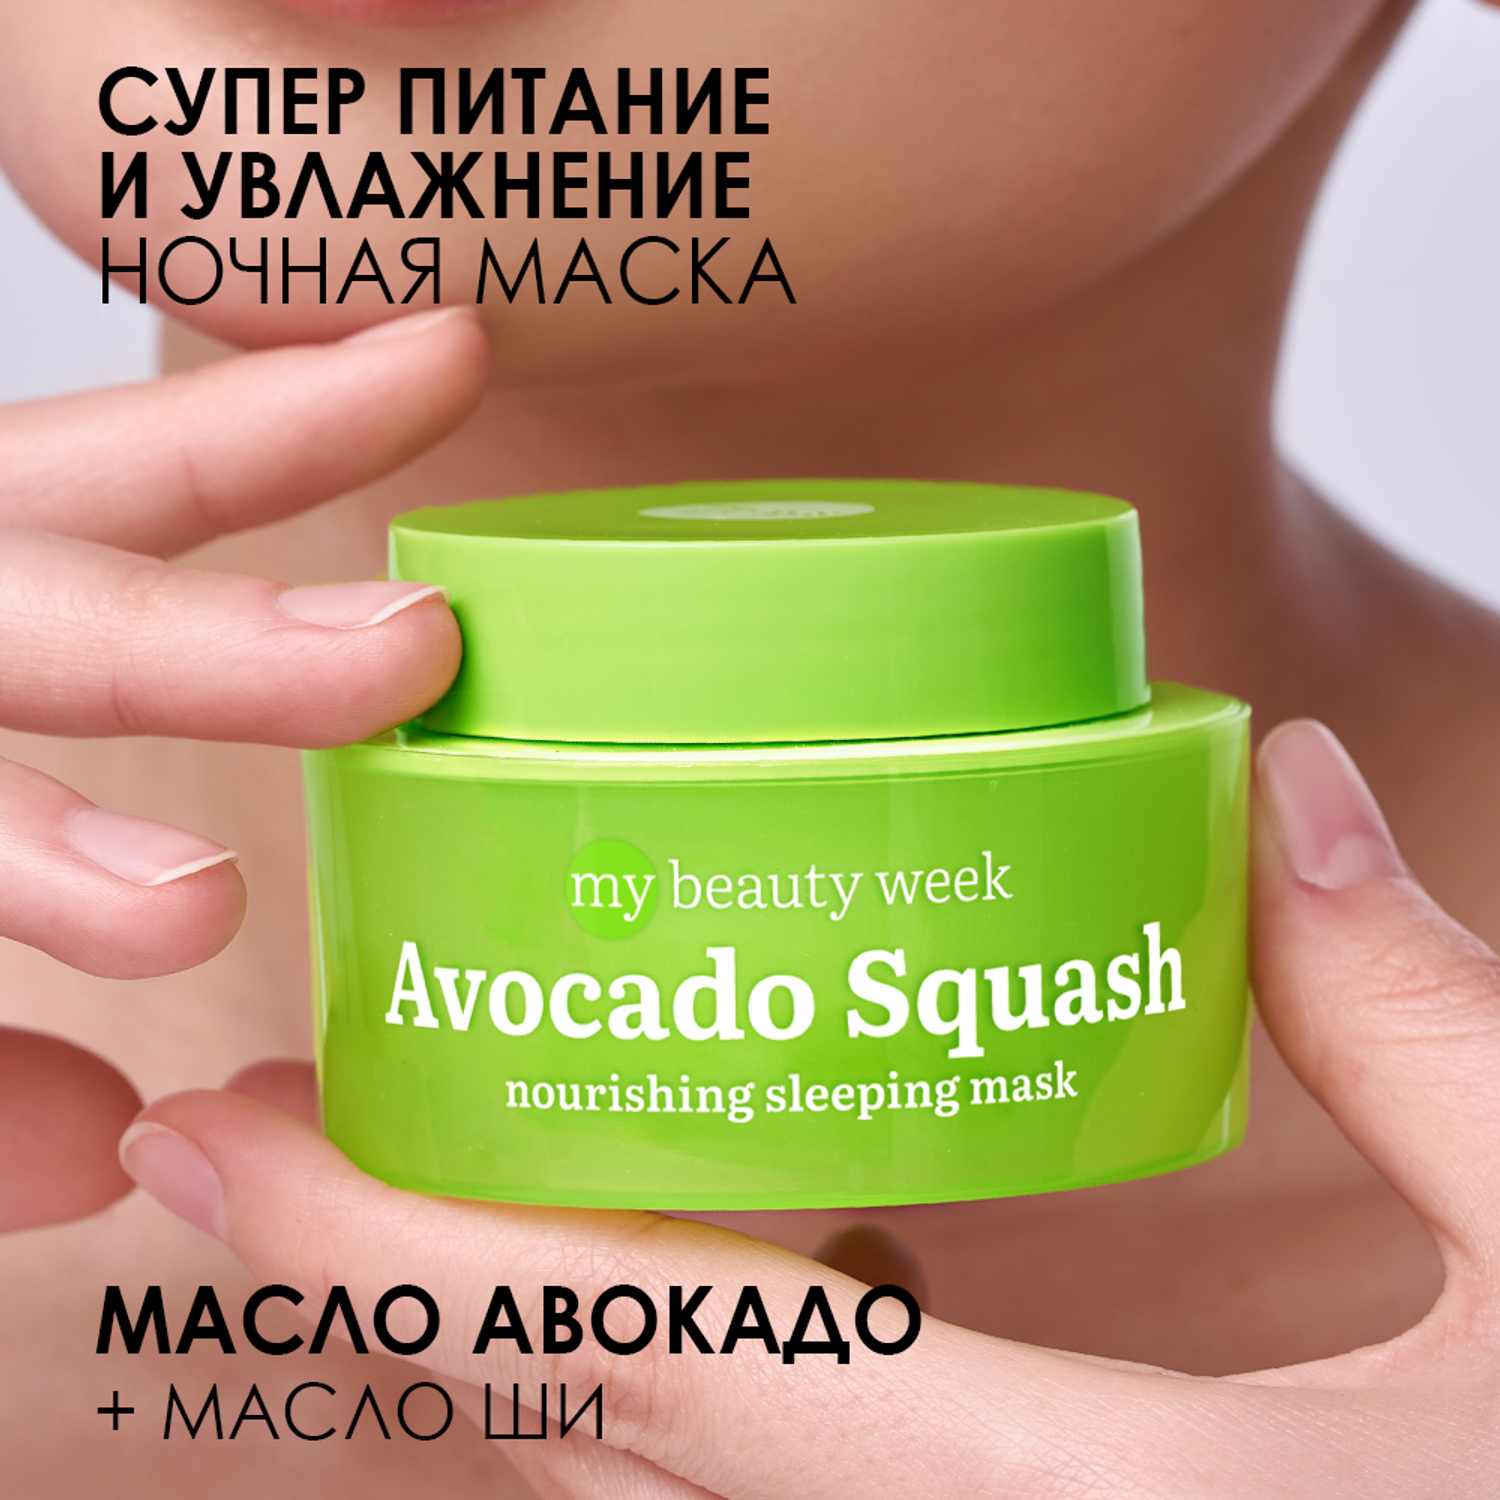 Маска для лица 7DAYS Avocado squash питательная ночная - фото 2